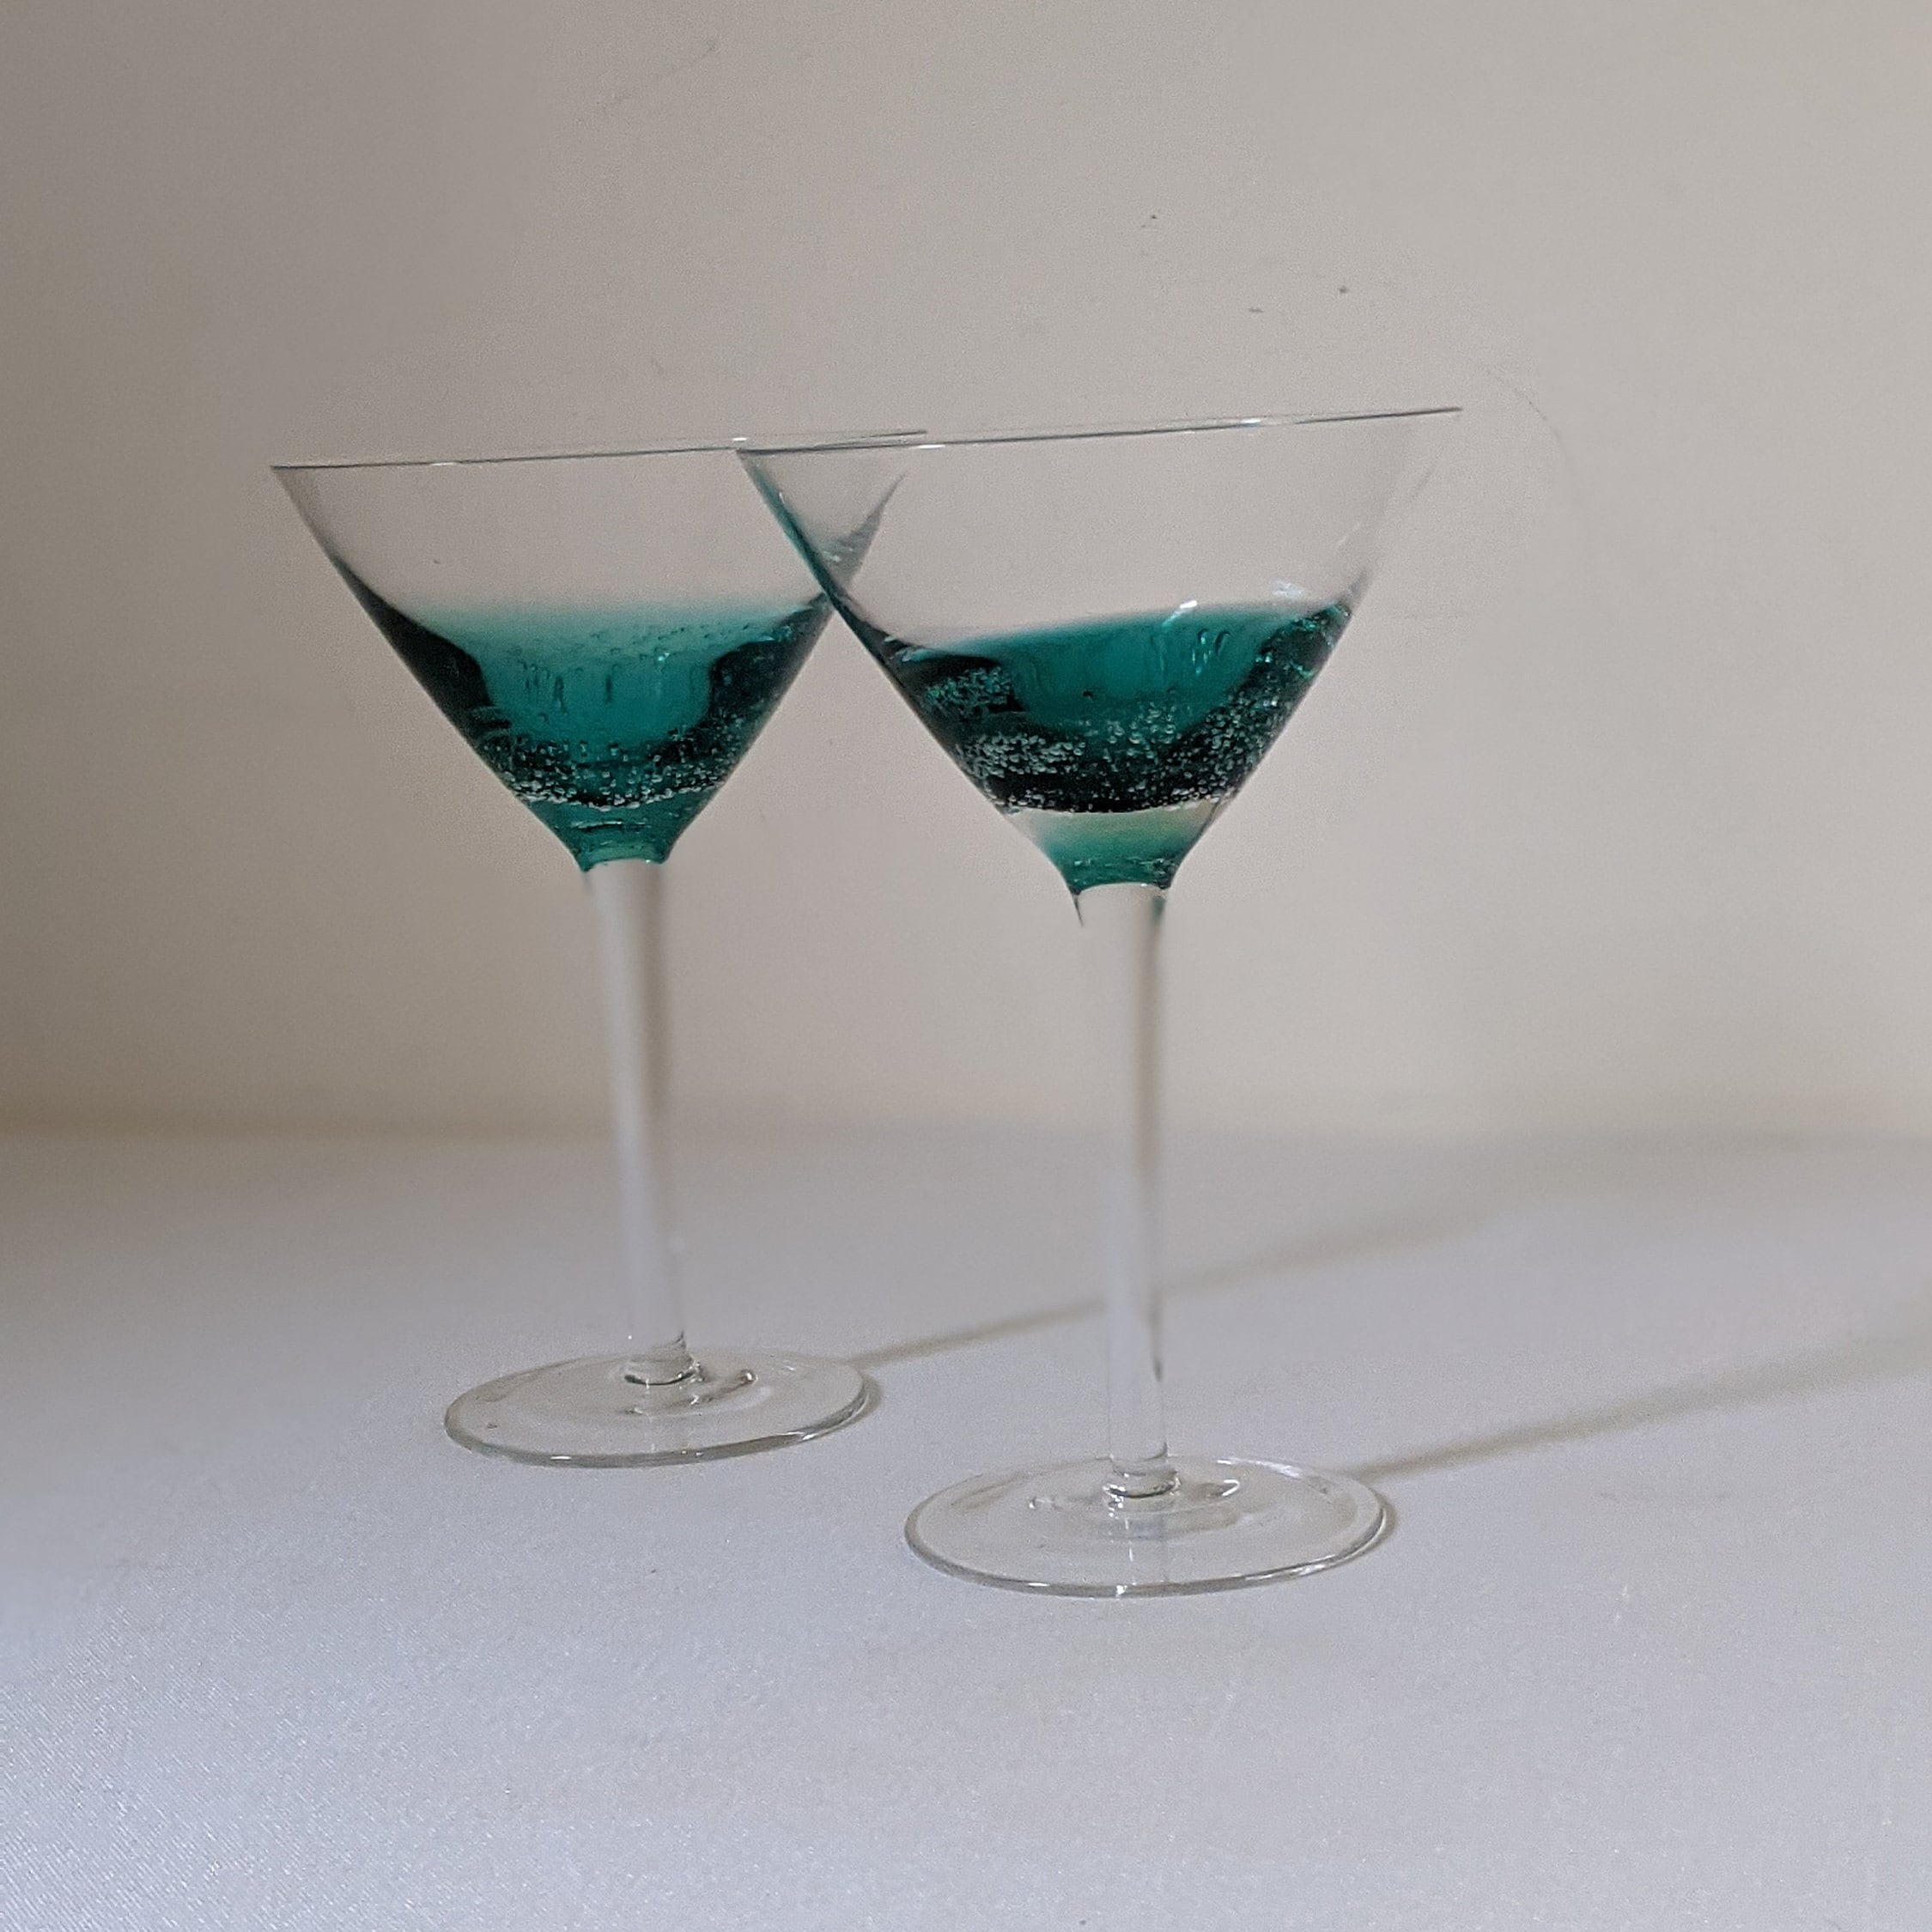 Hand Blown Murano Orange Brown Speckled Glass Martini Glasses Set Of 8 RARE!